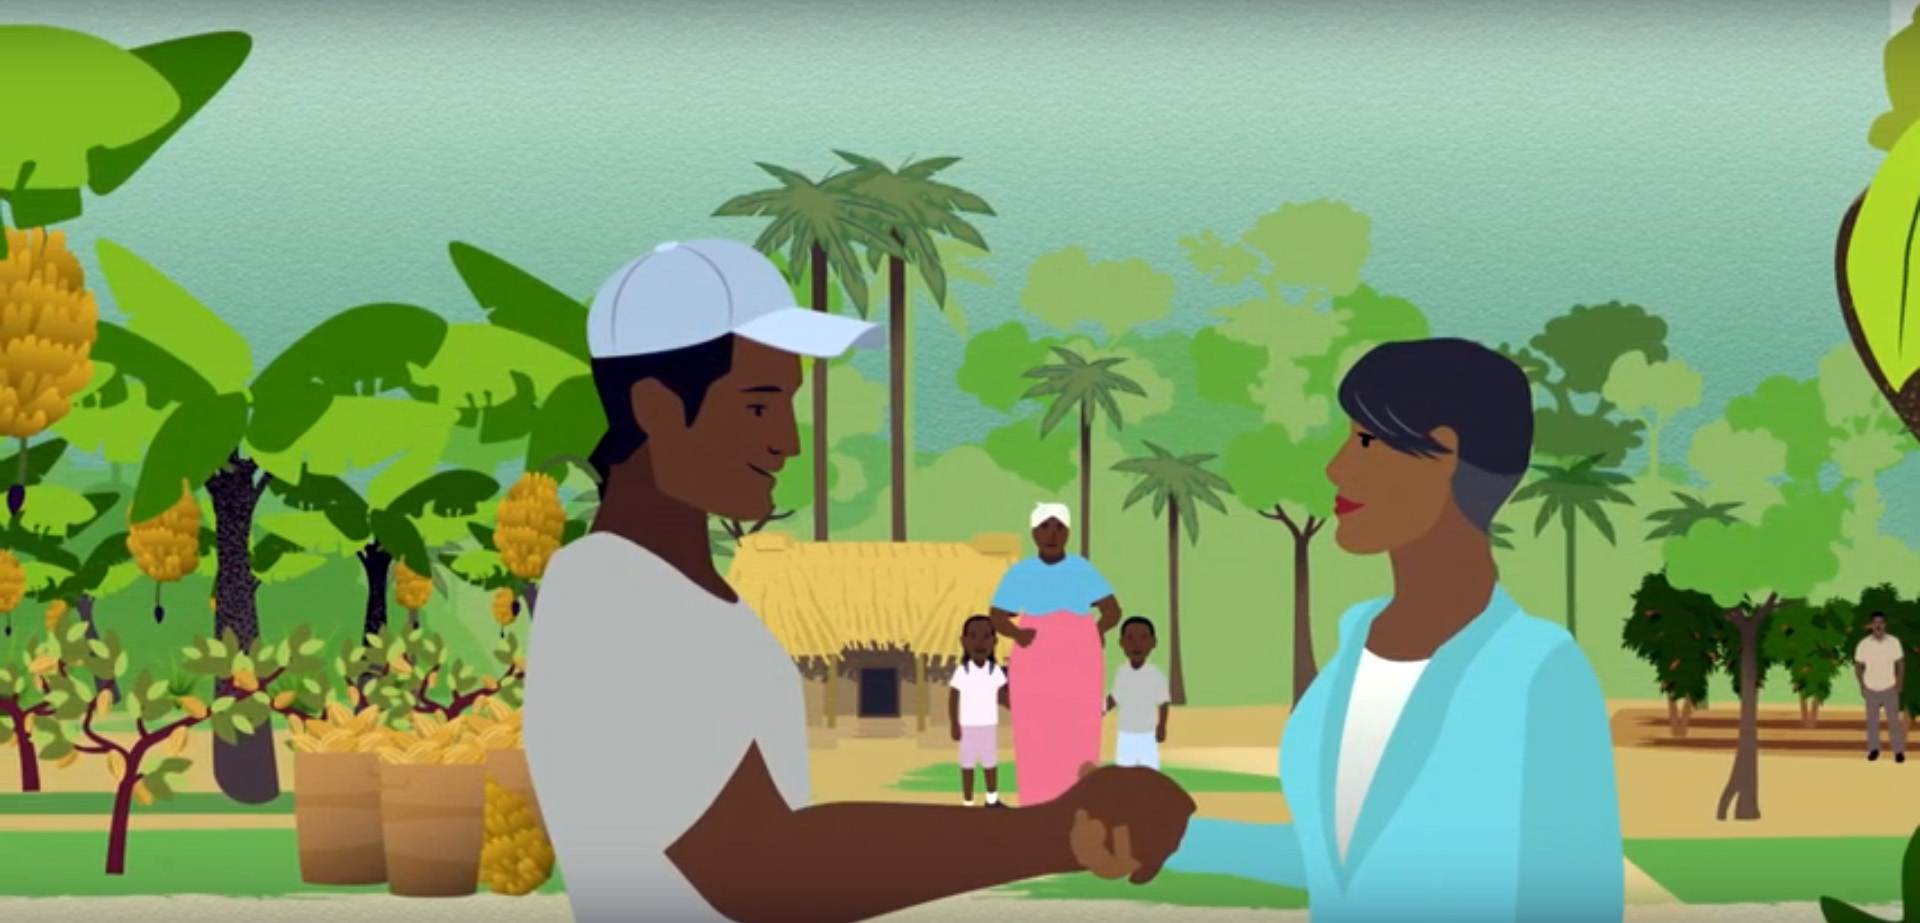 Standbild aus dem Video "Faires Einkommen erreichen"